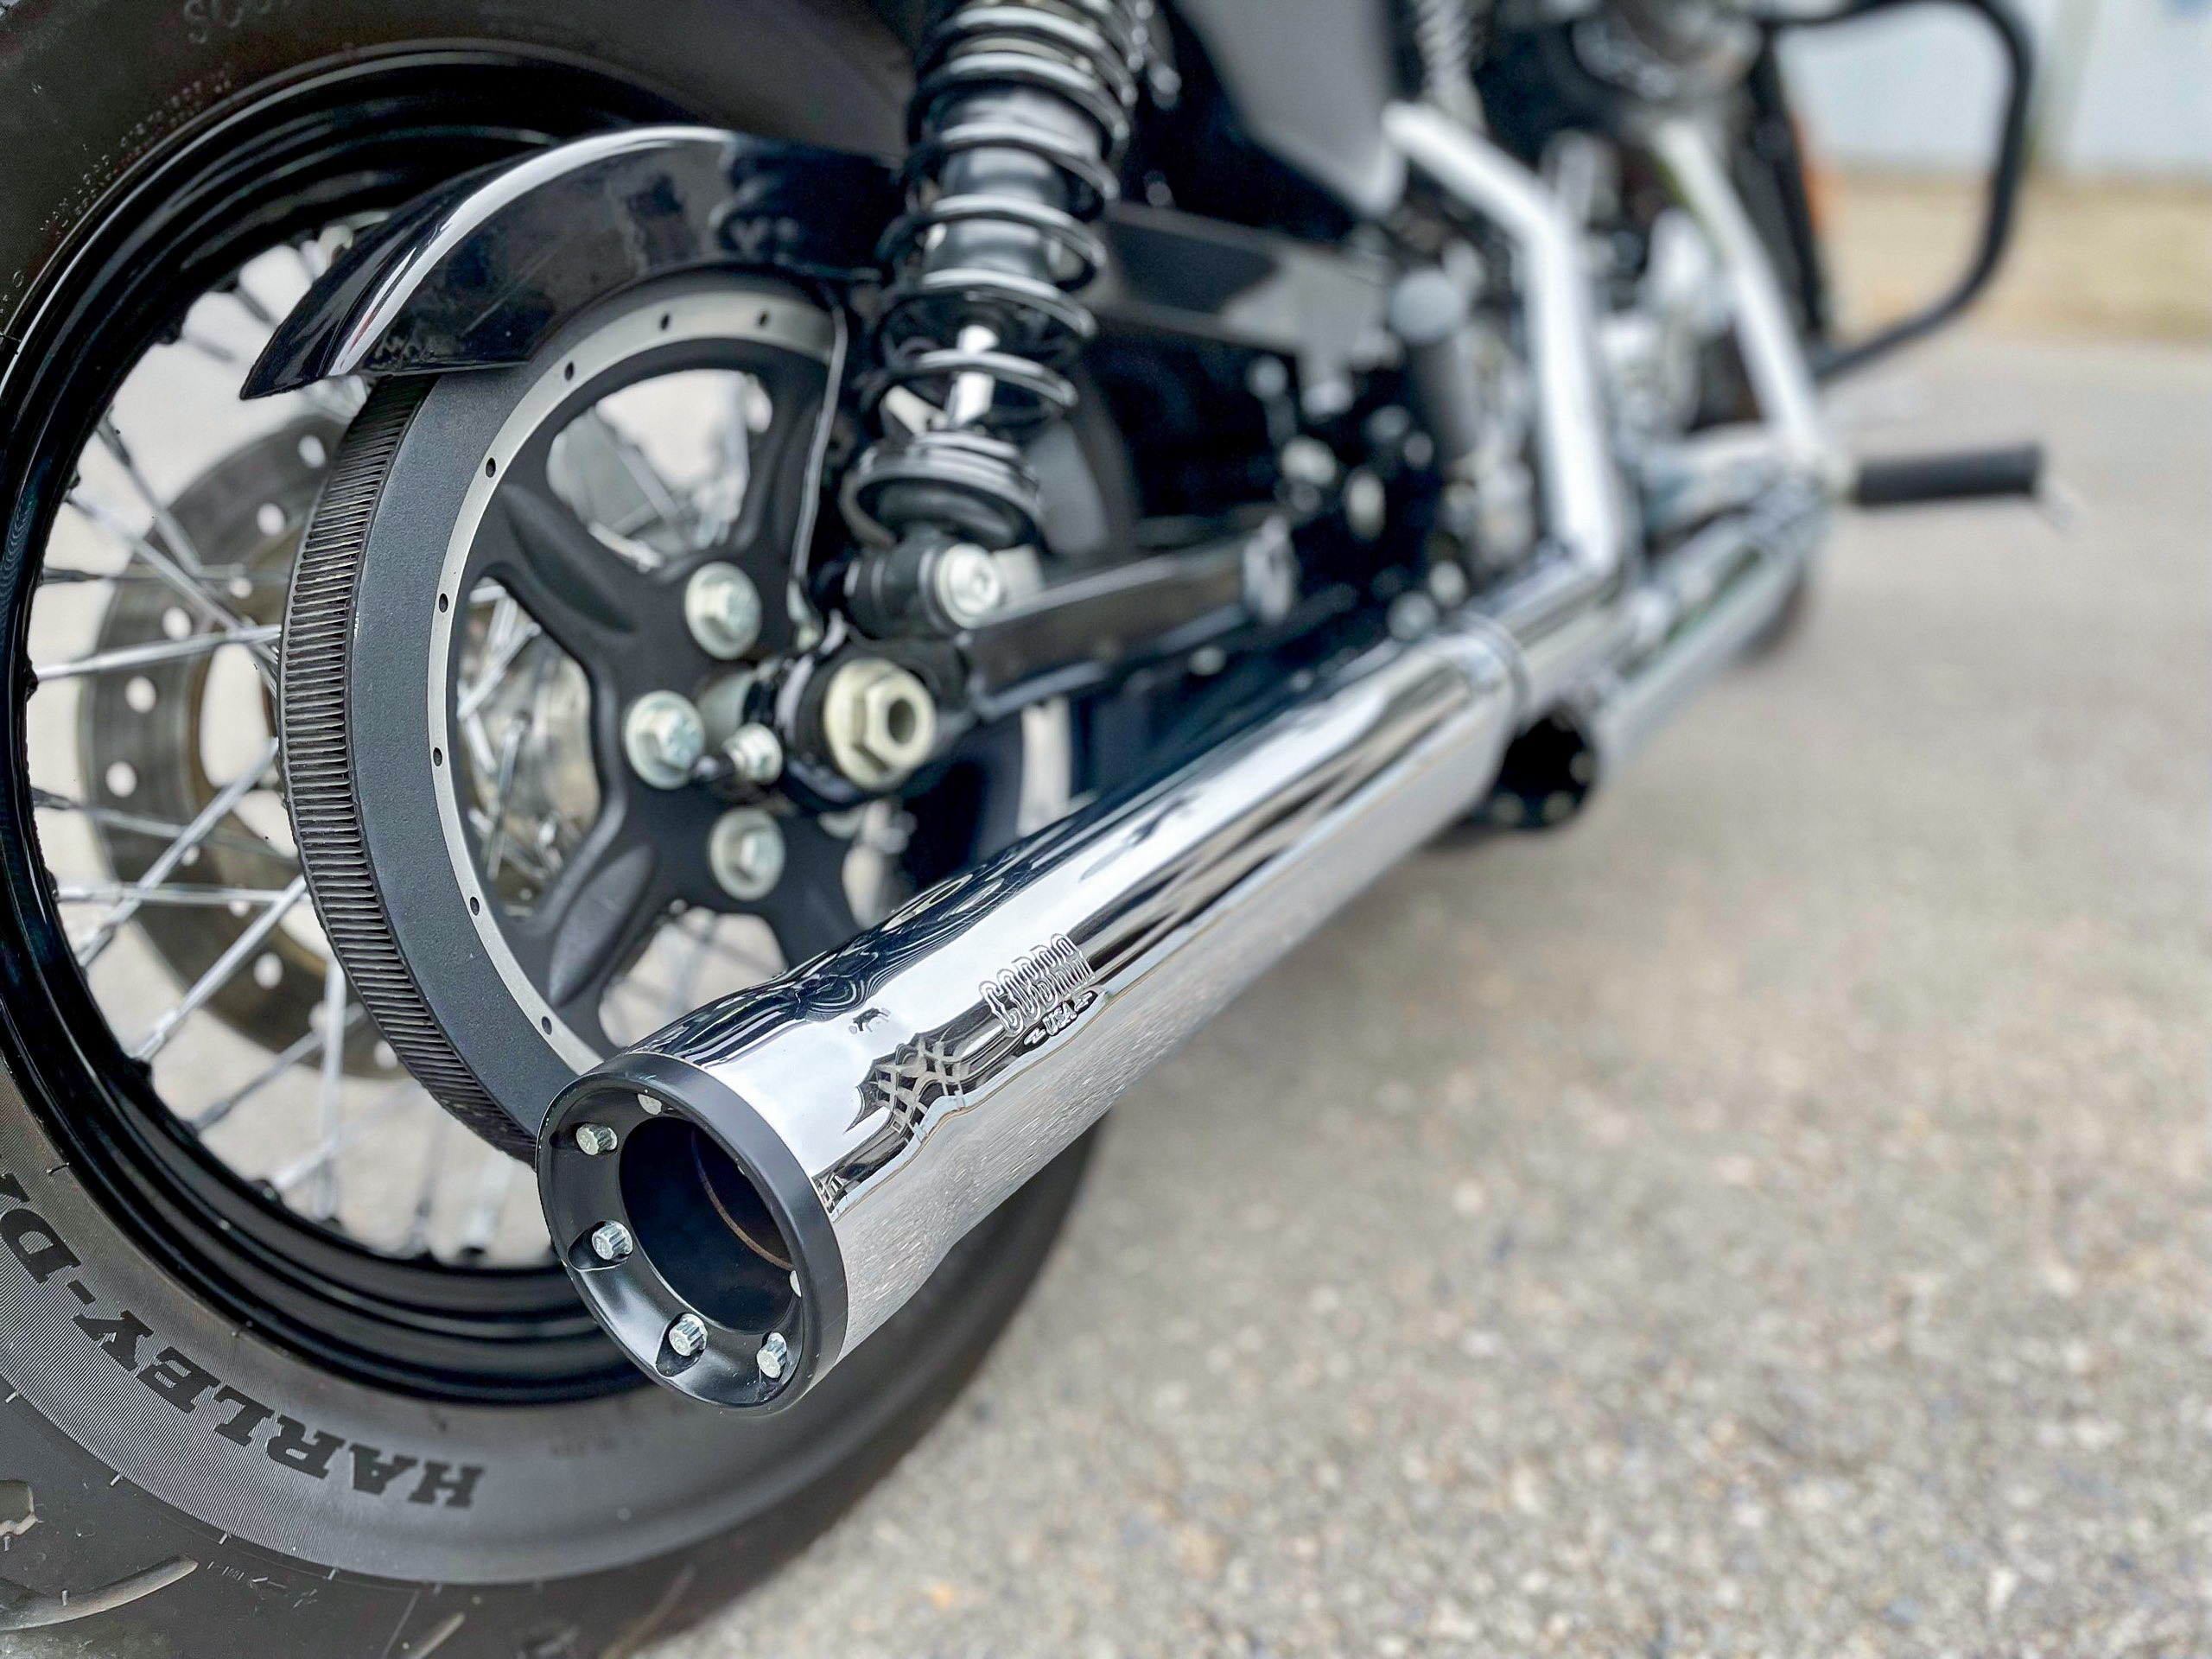 Harley Davidson Custom1200 2019